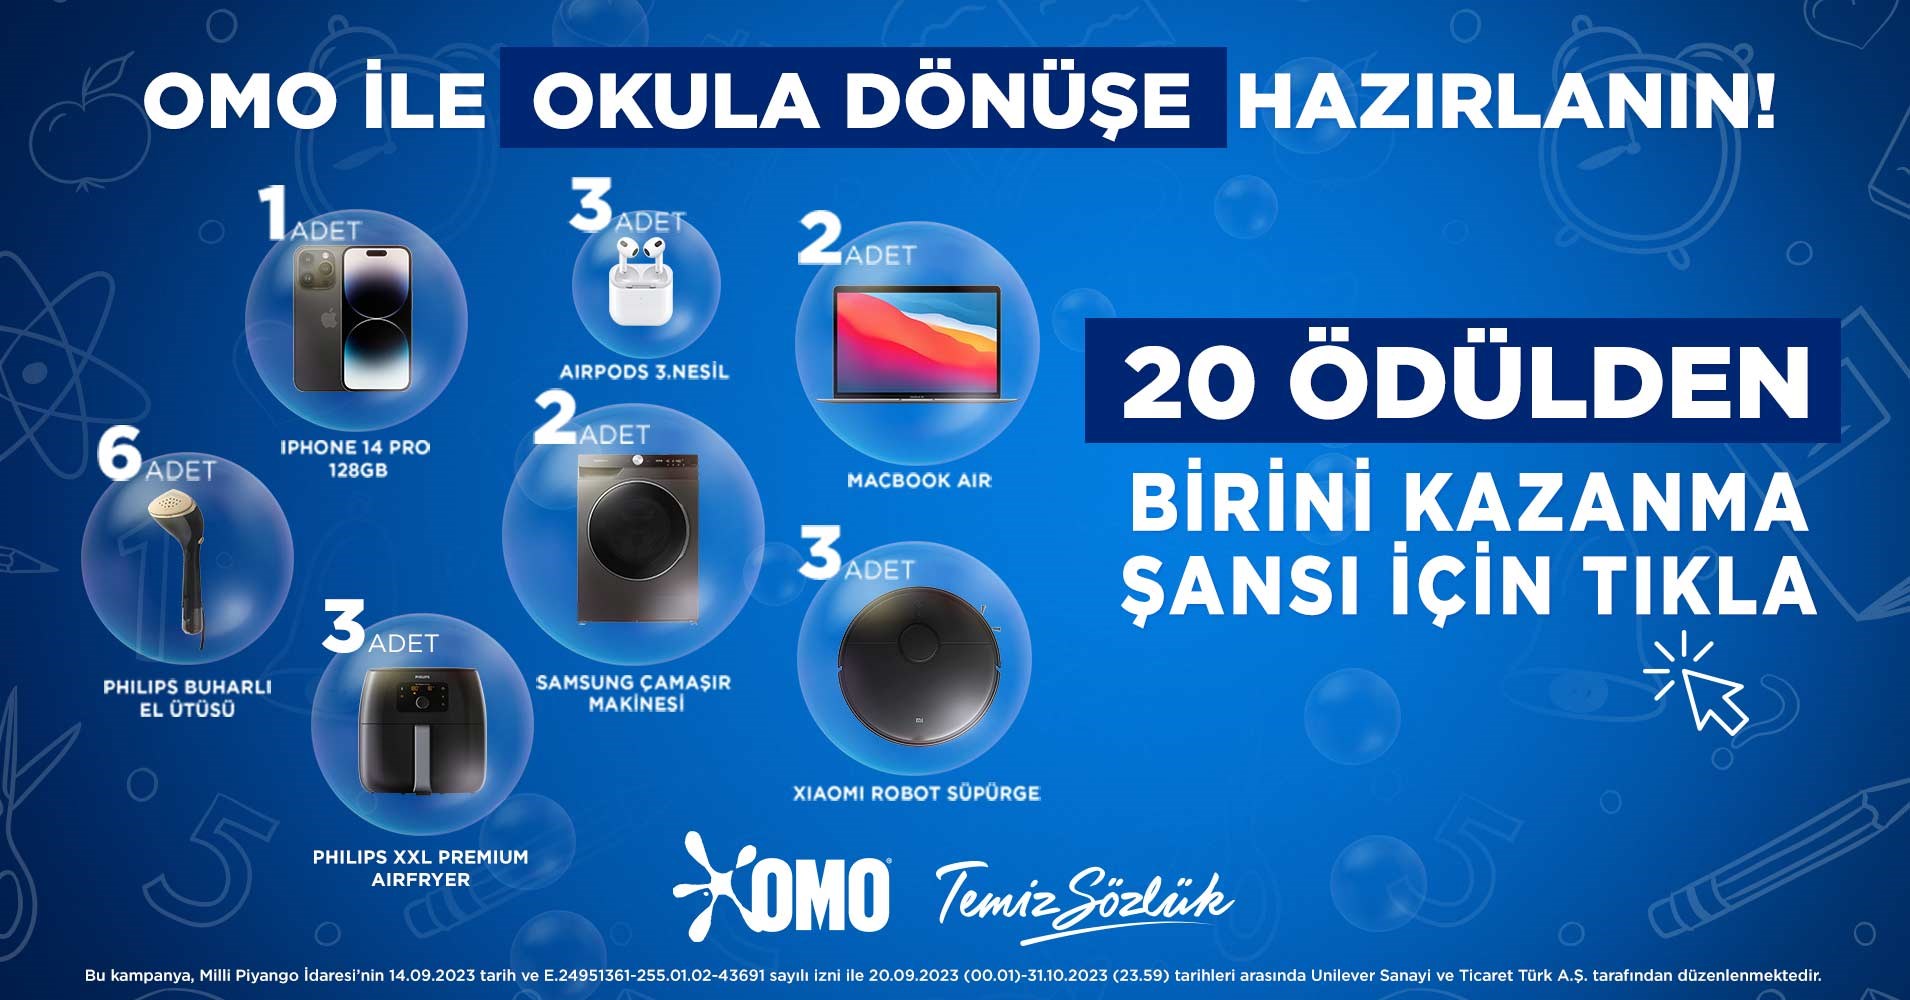 Omo'dan Okula Dönüş kampanyası: 20 kişiye teknolojik ürün hediye!